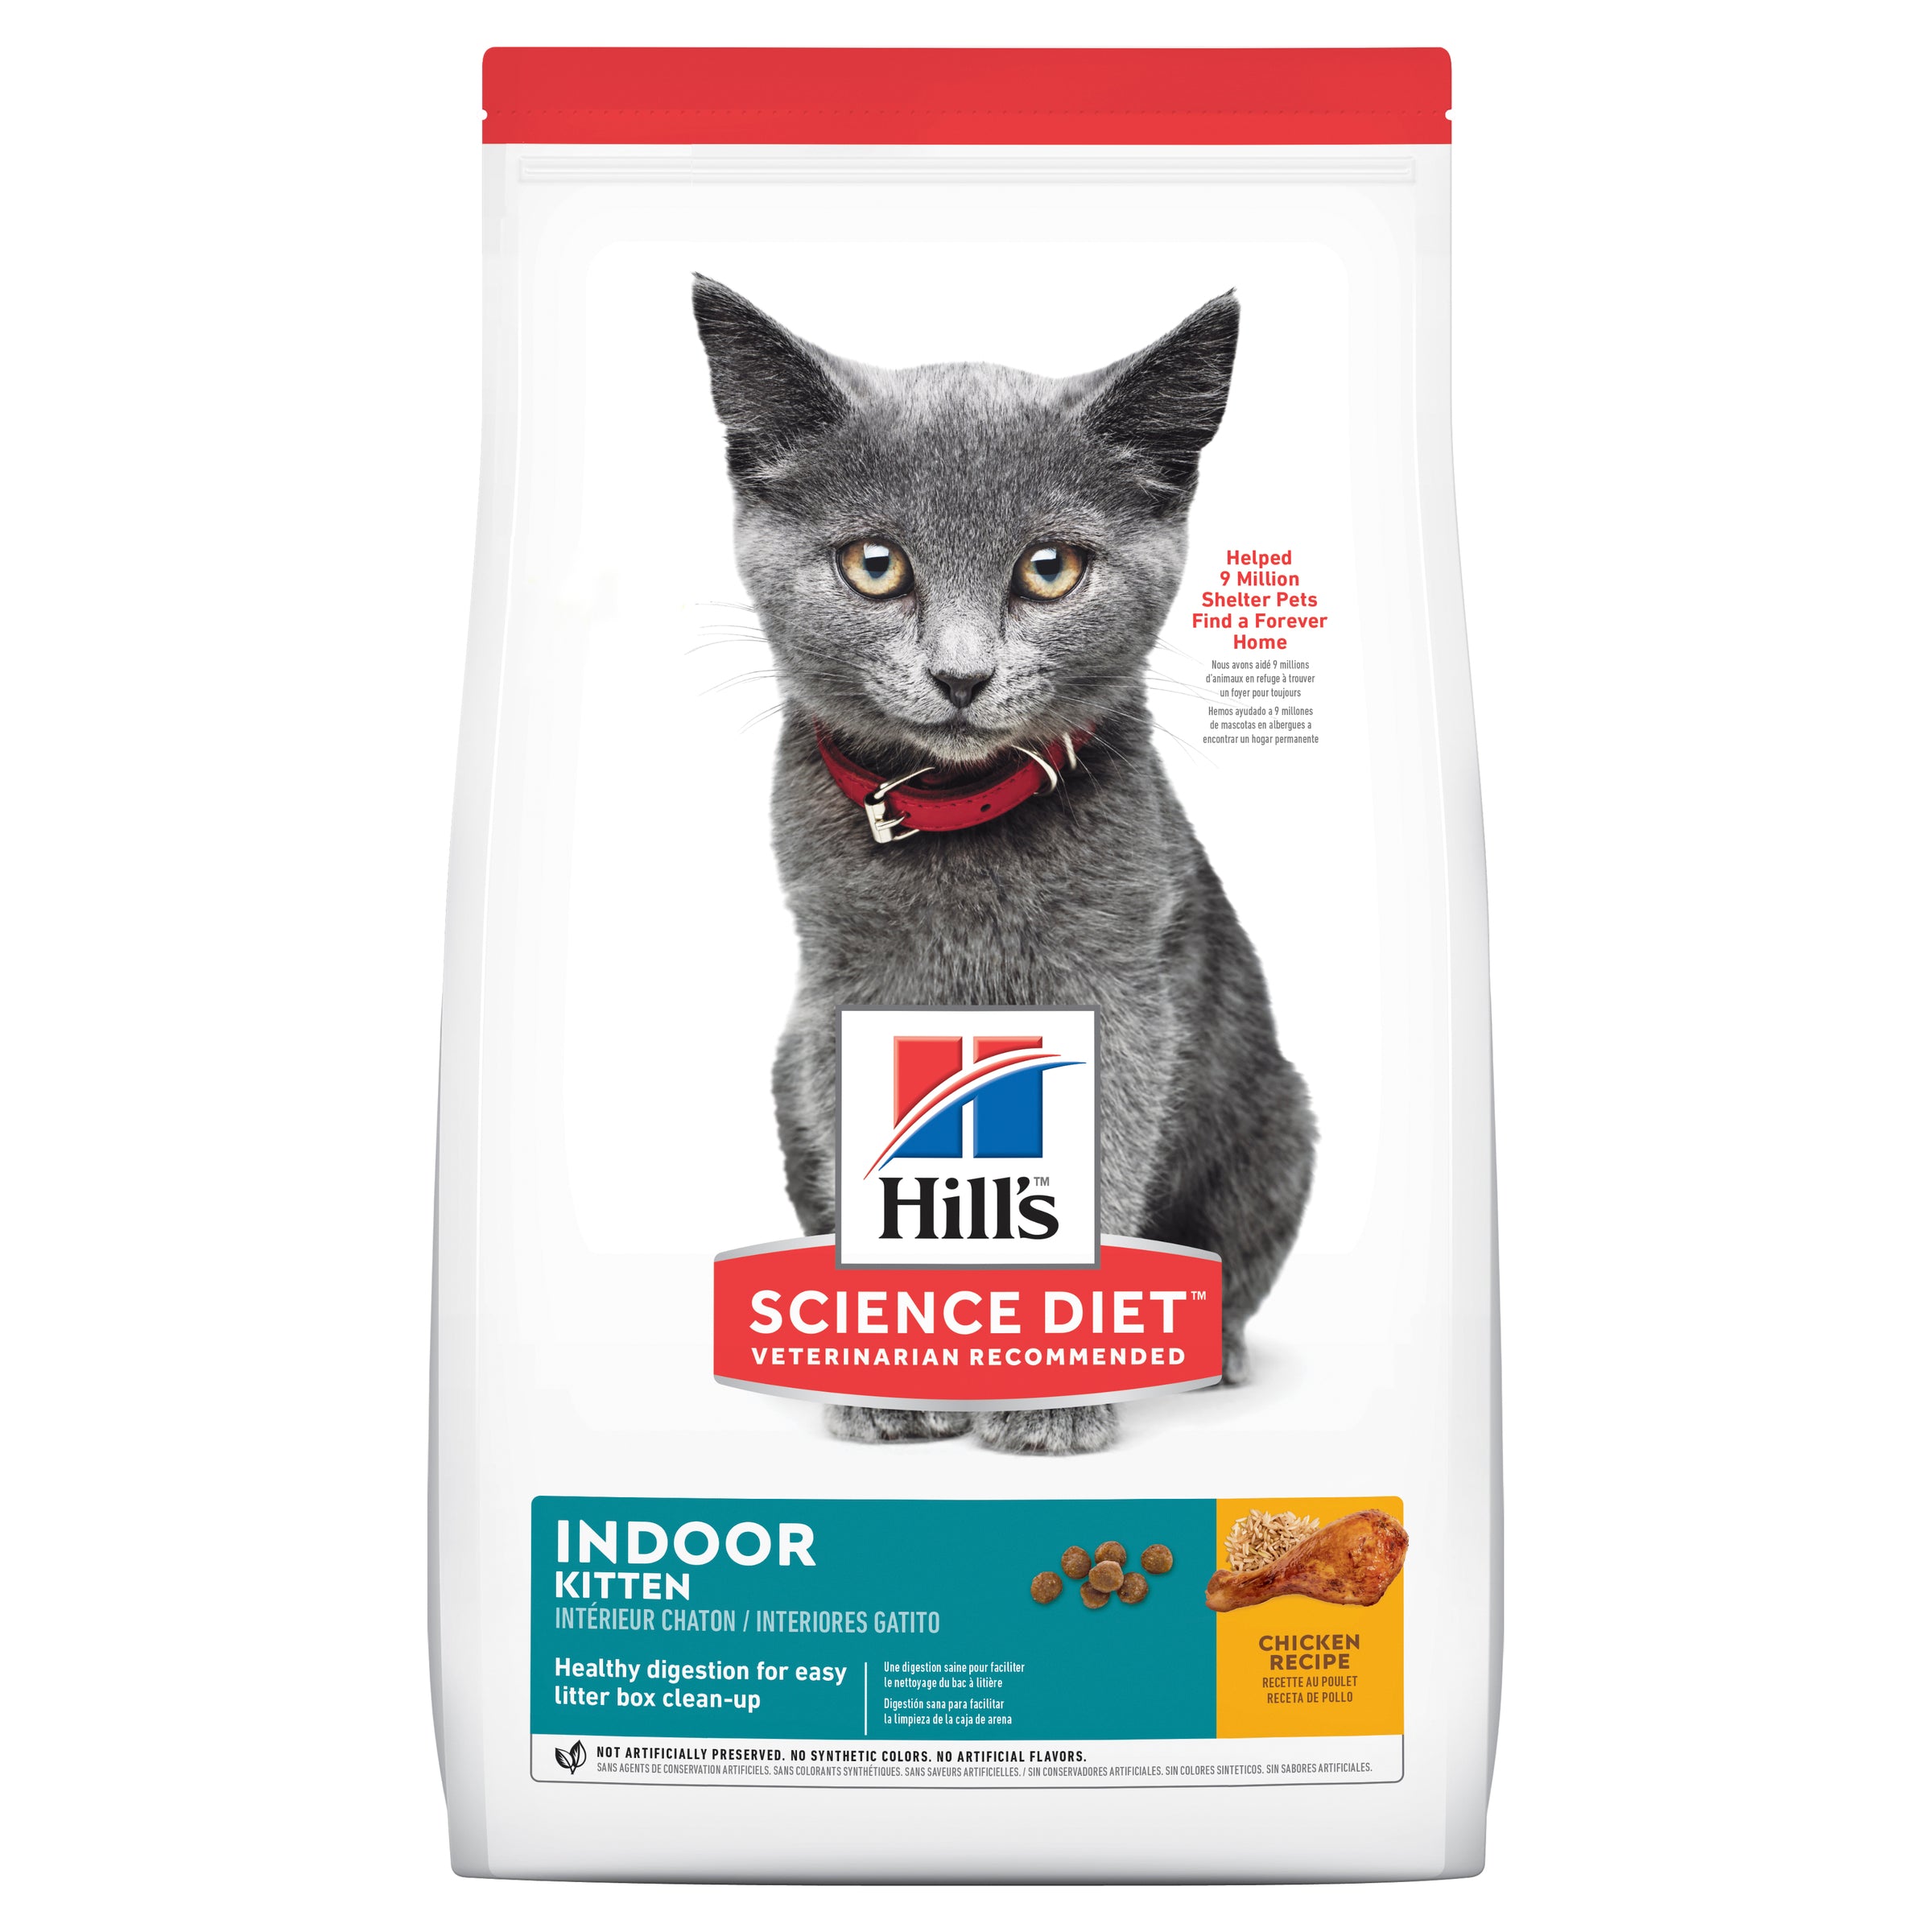 Hills Science Diet Kitten Indoor 1.58-3.17kg